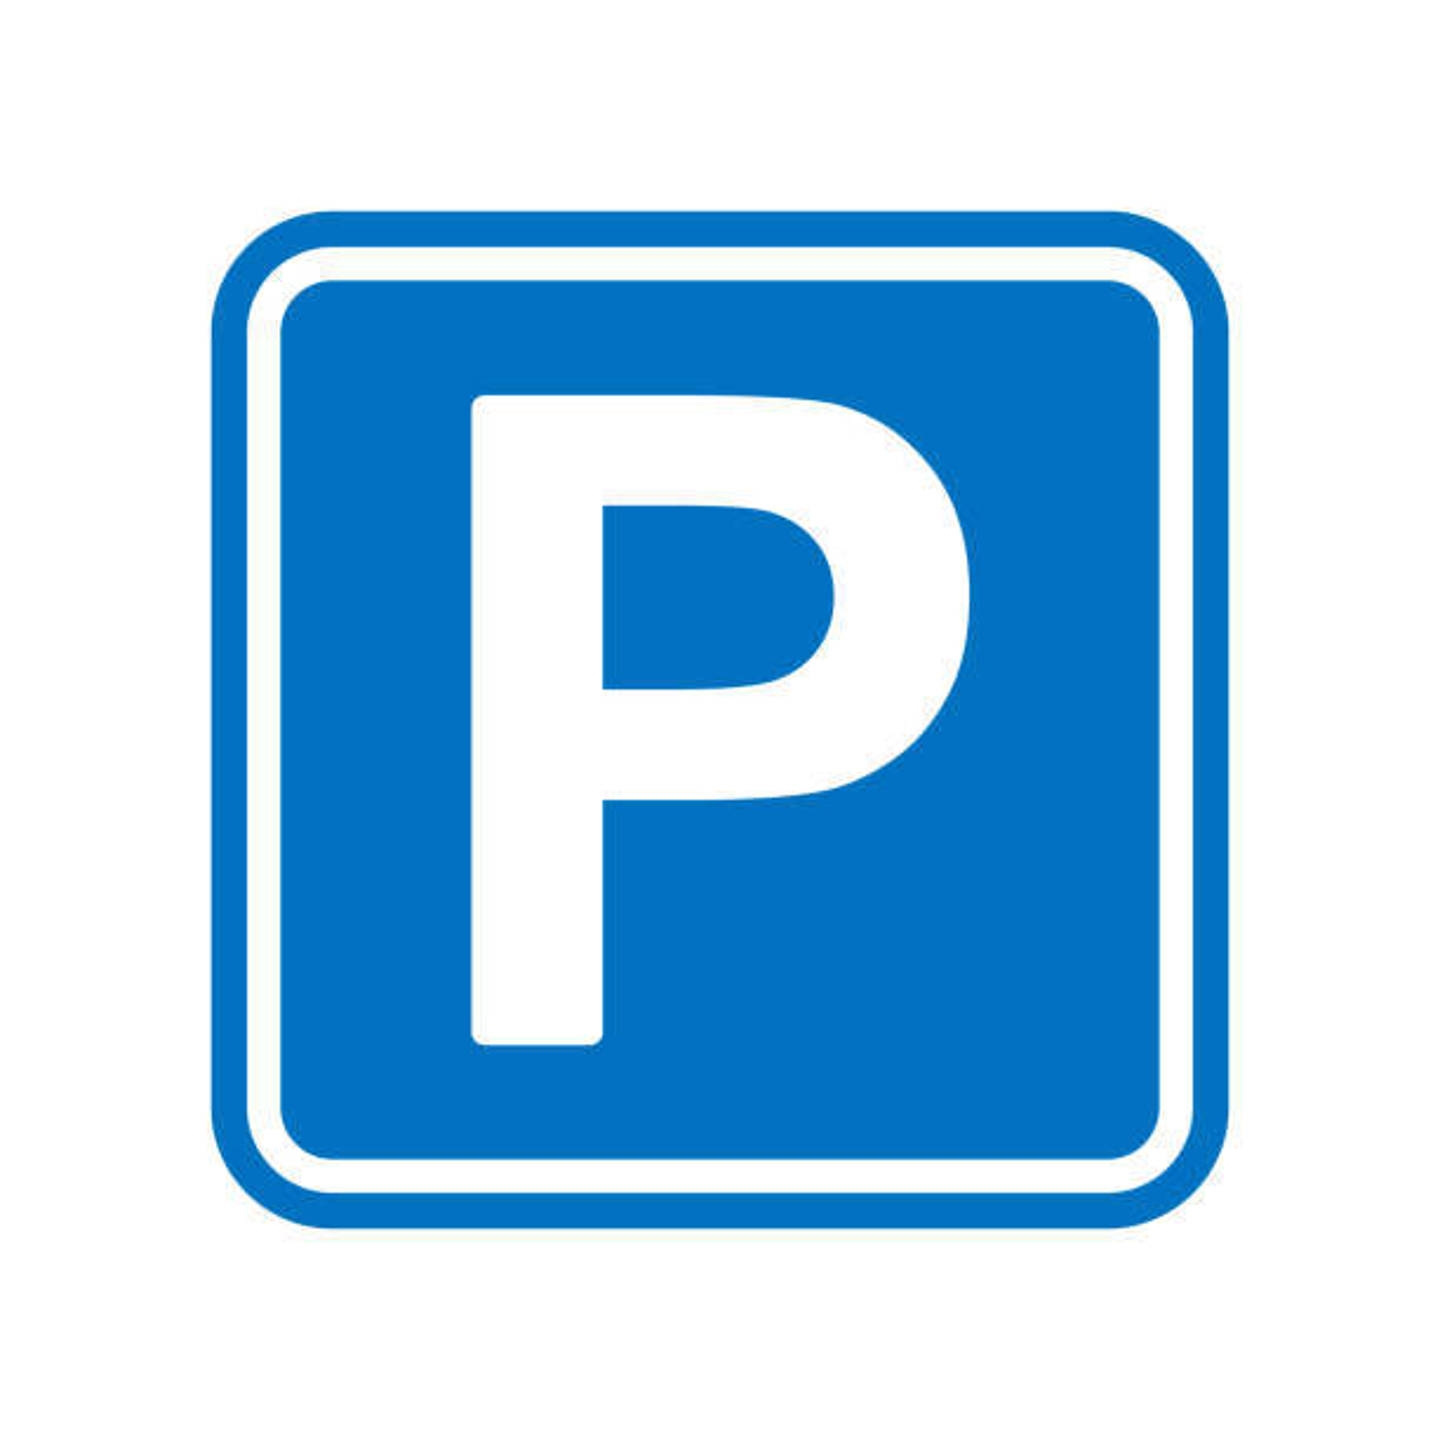 Parking / garage à vendre à Molenbeek-Saint-Jean 1080 15450.00€  chambres 12.50m² - annonce 1324762